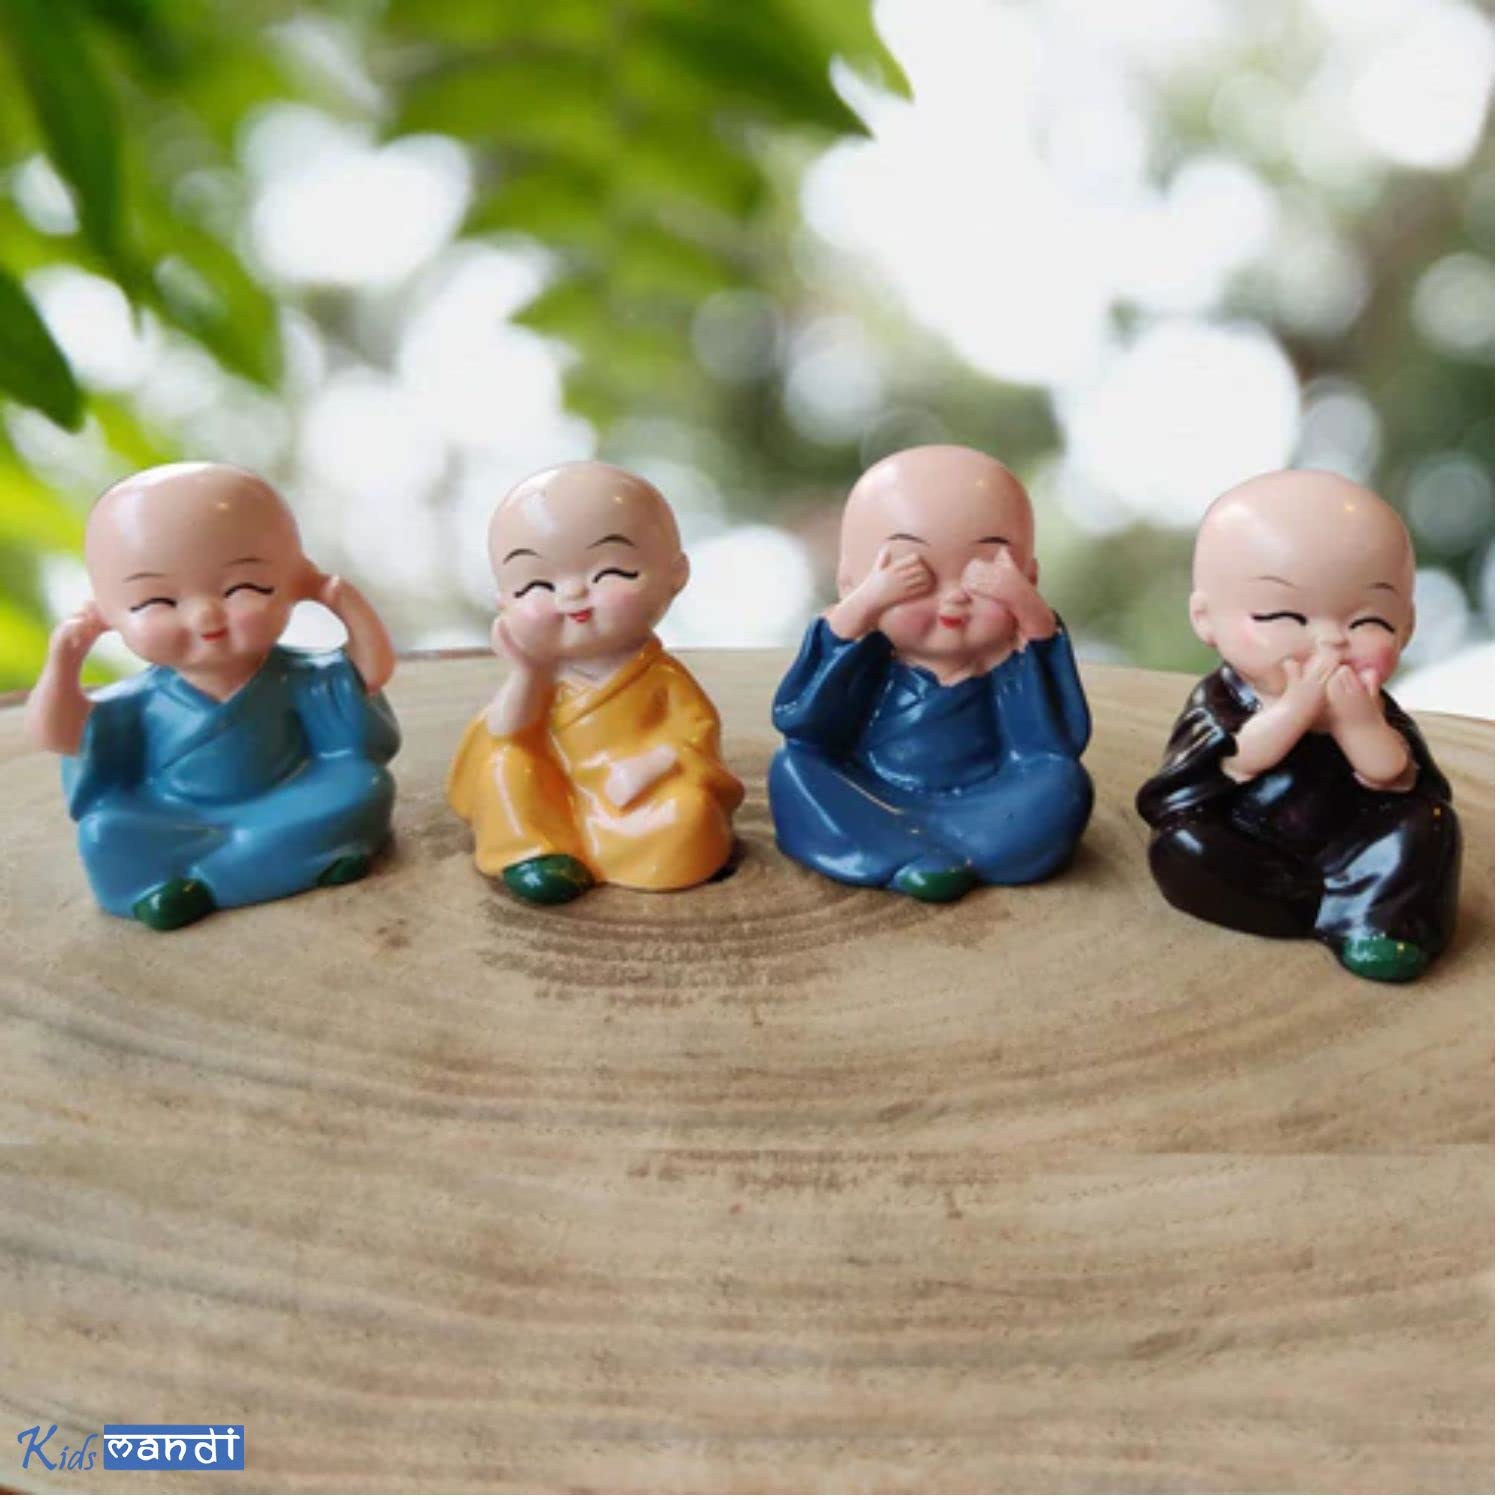 Kids Mandi little baby monk Buddha idols set of 4 multicolor